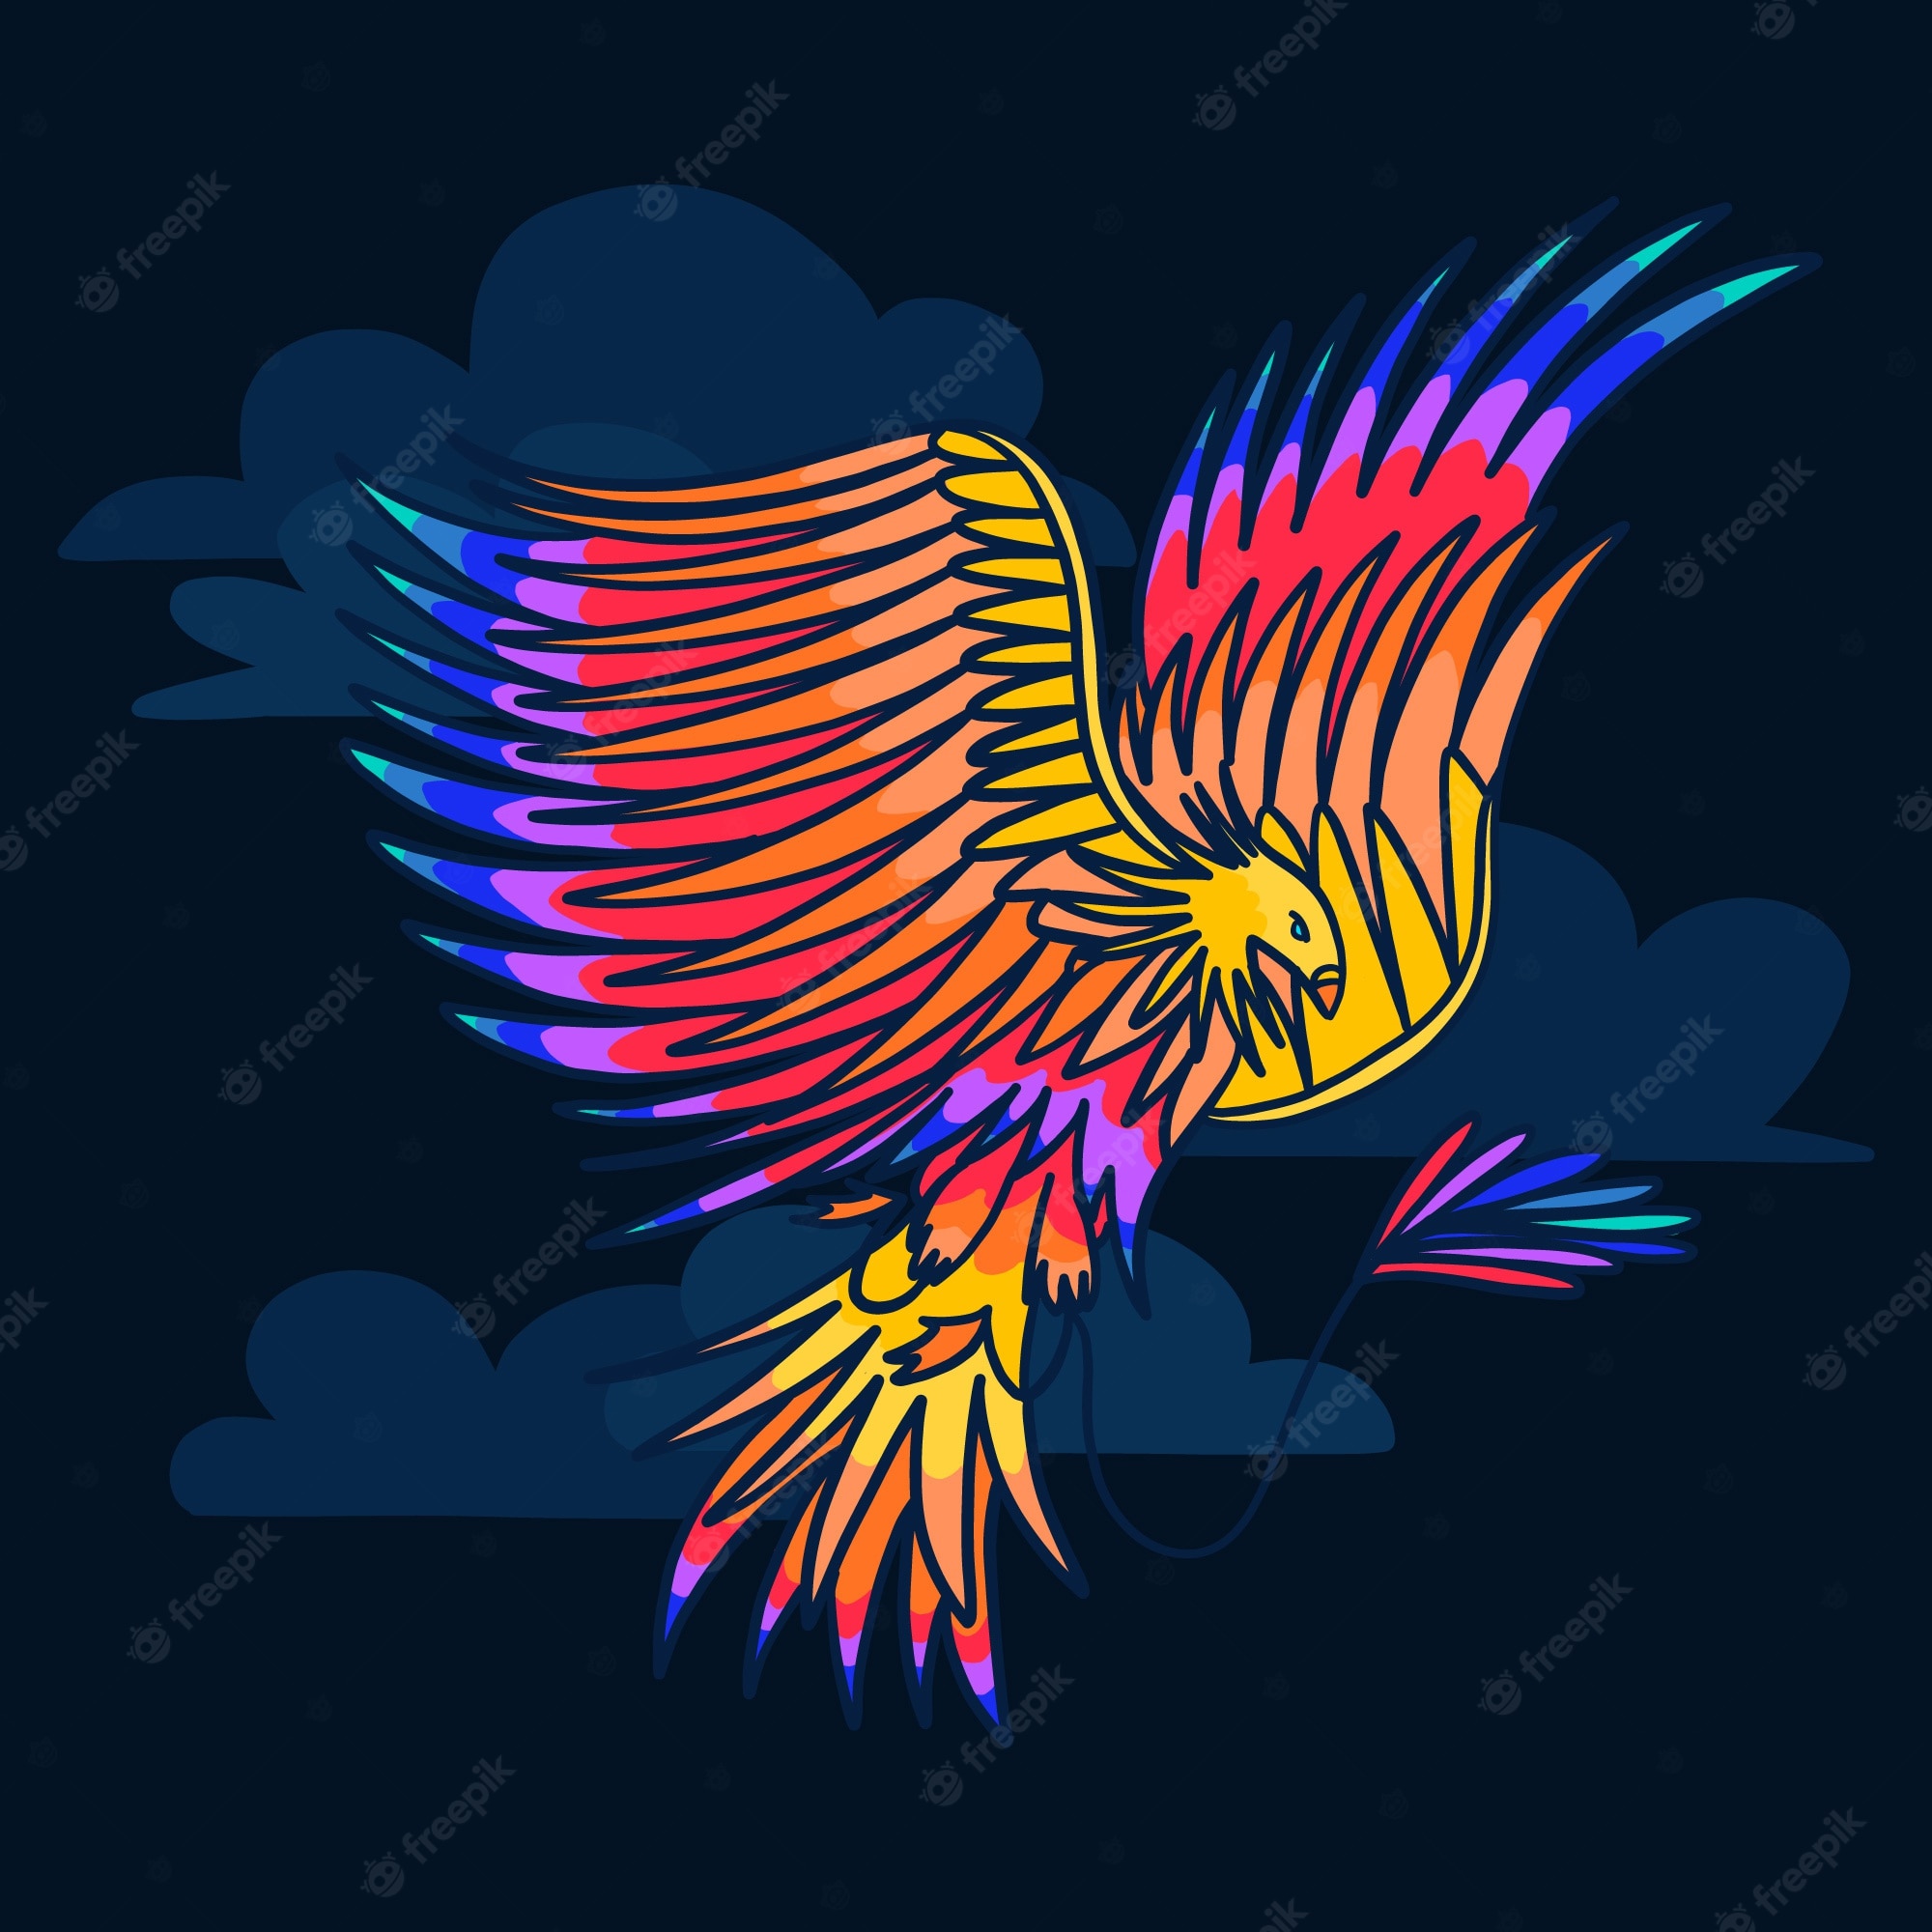 Phoenix Bird Images Free Download Wallpapers